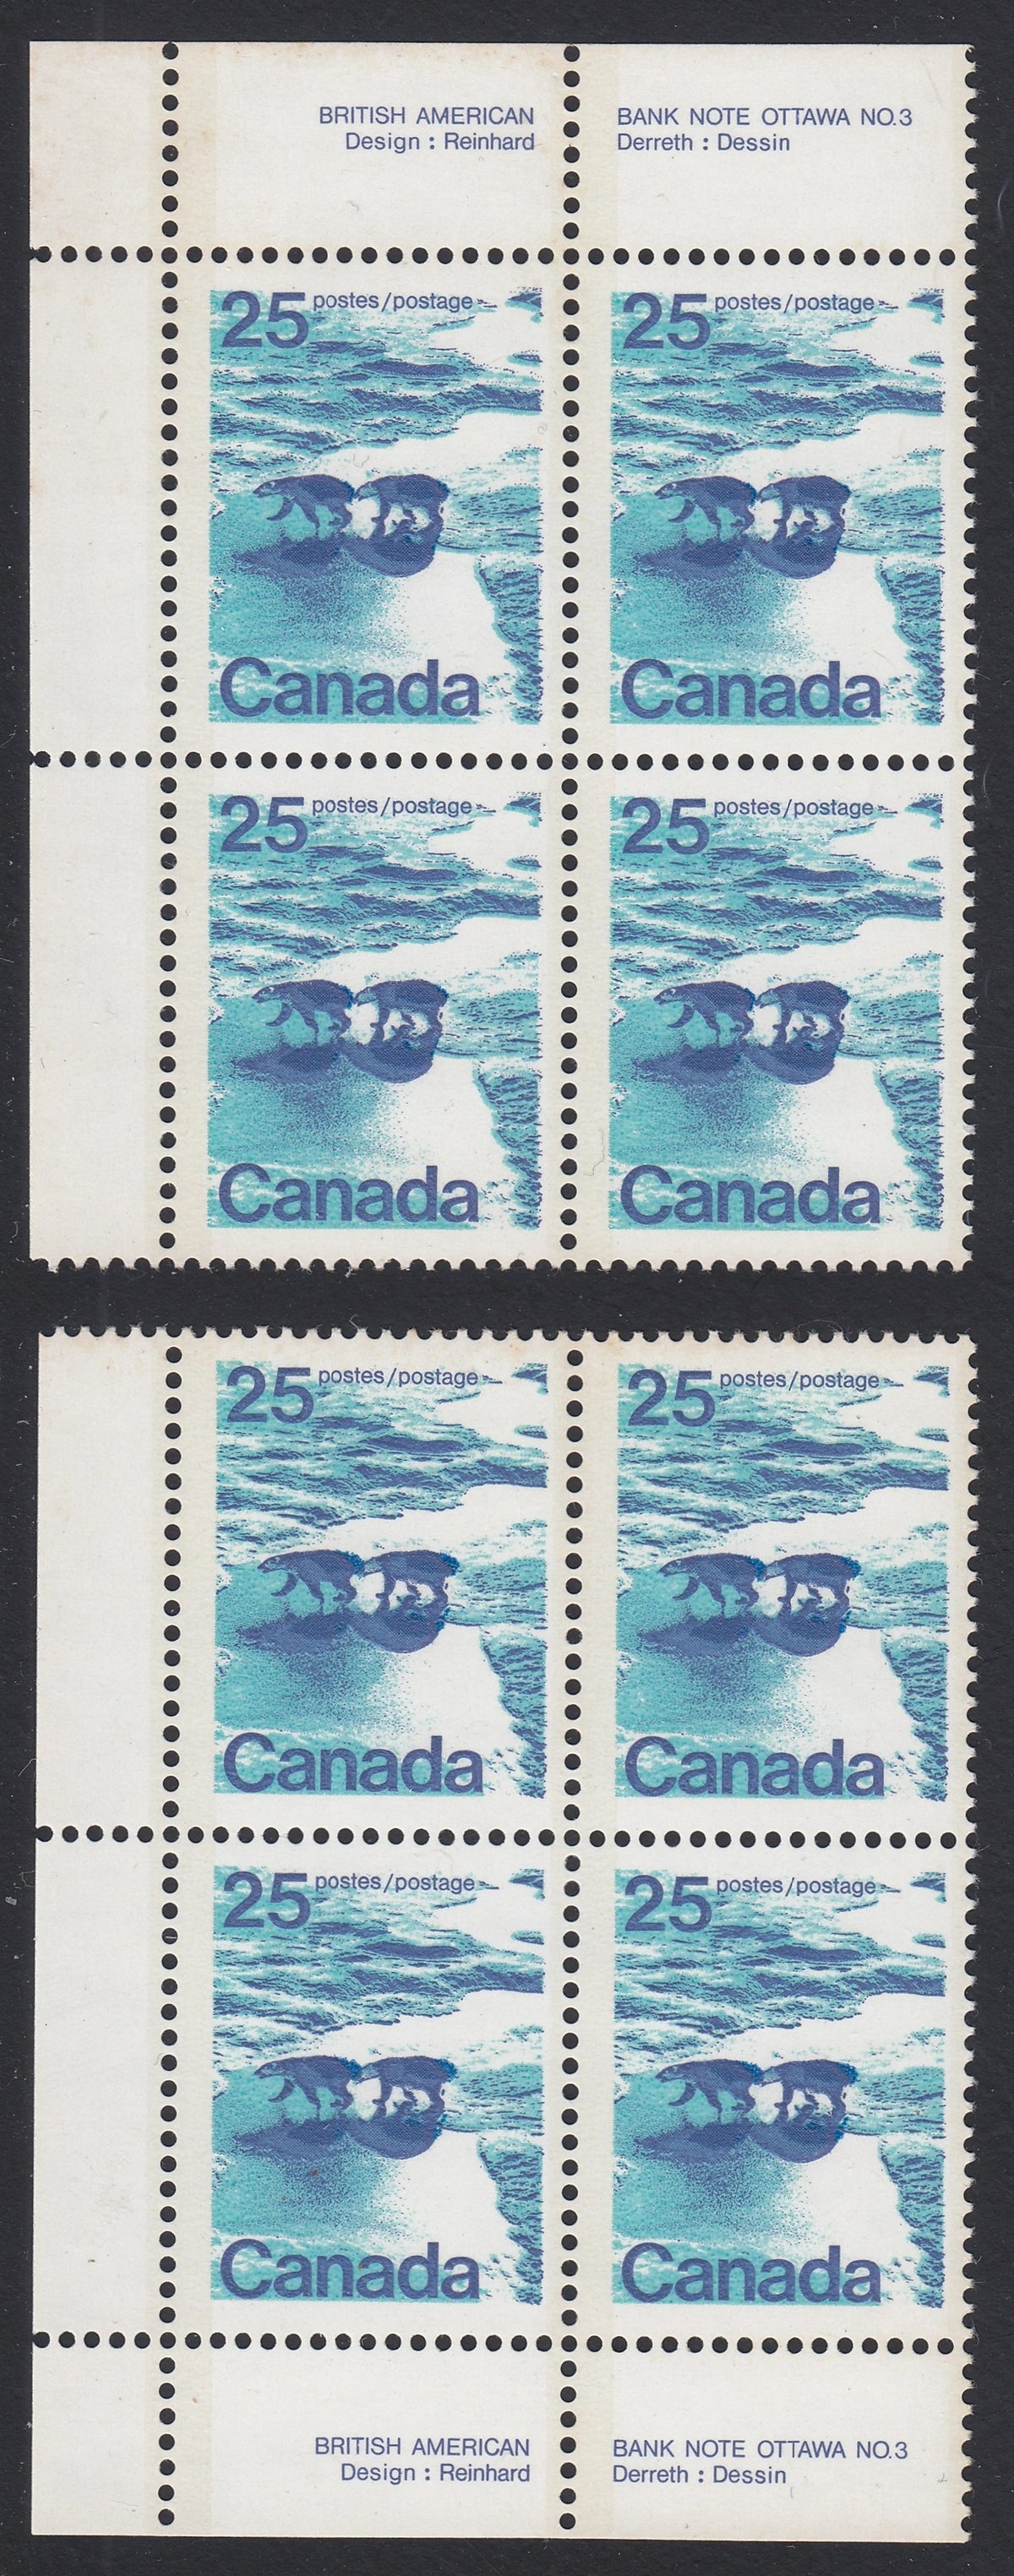 0597CA2103 - Canada #597aiii - Mint Block Set